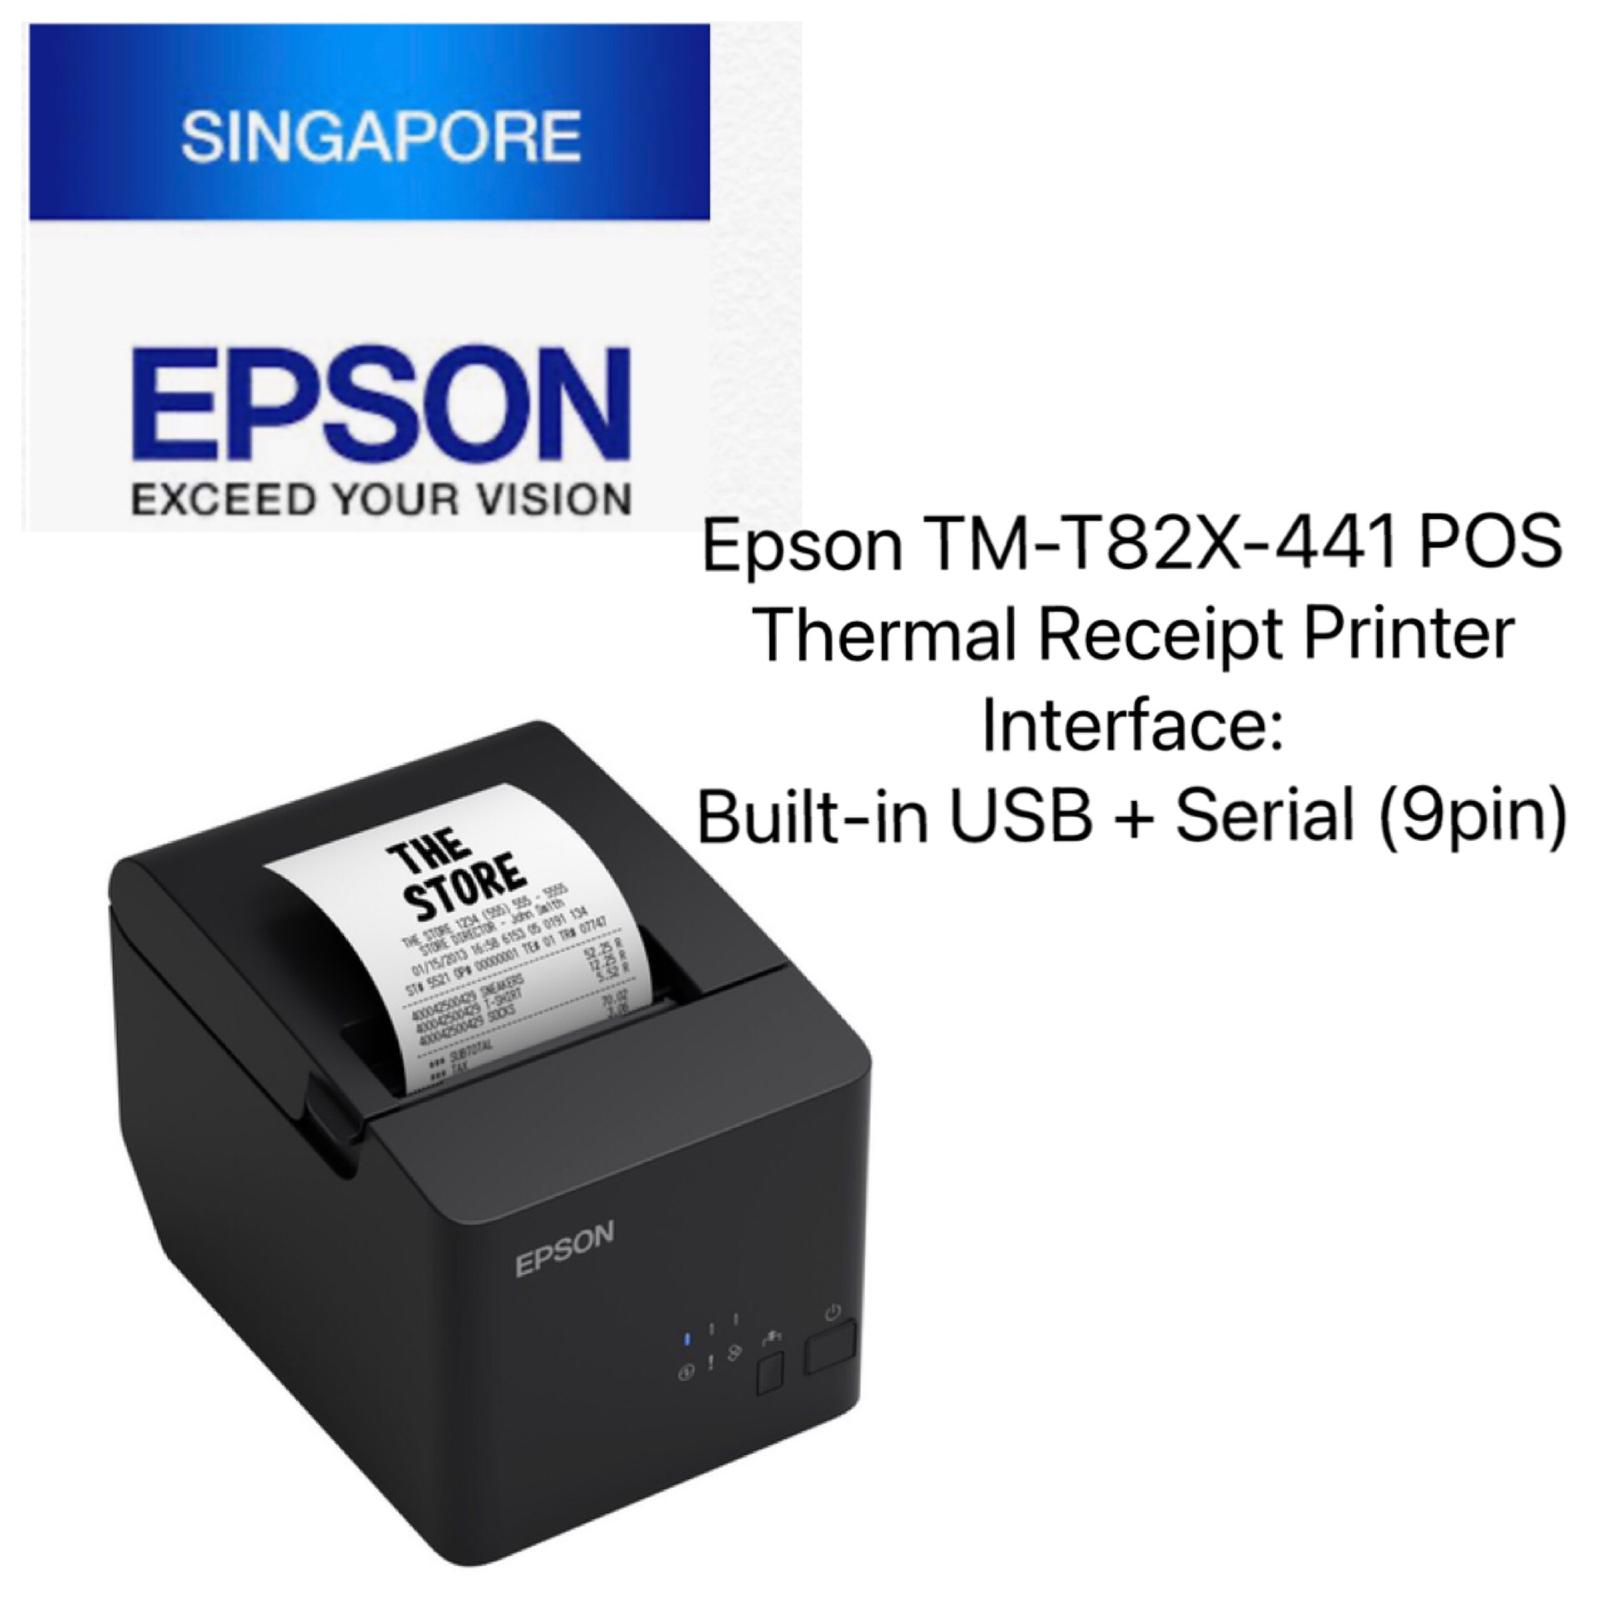 Genuine Epson TM-T82X-441 POS Thermal Receipt Printer**Interface